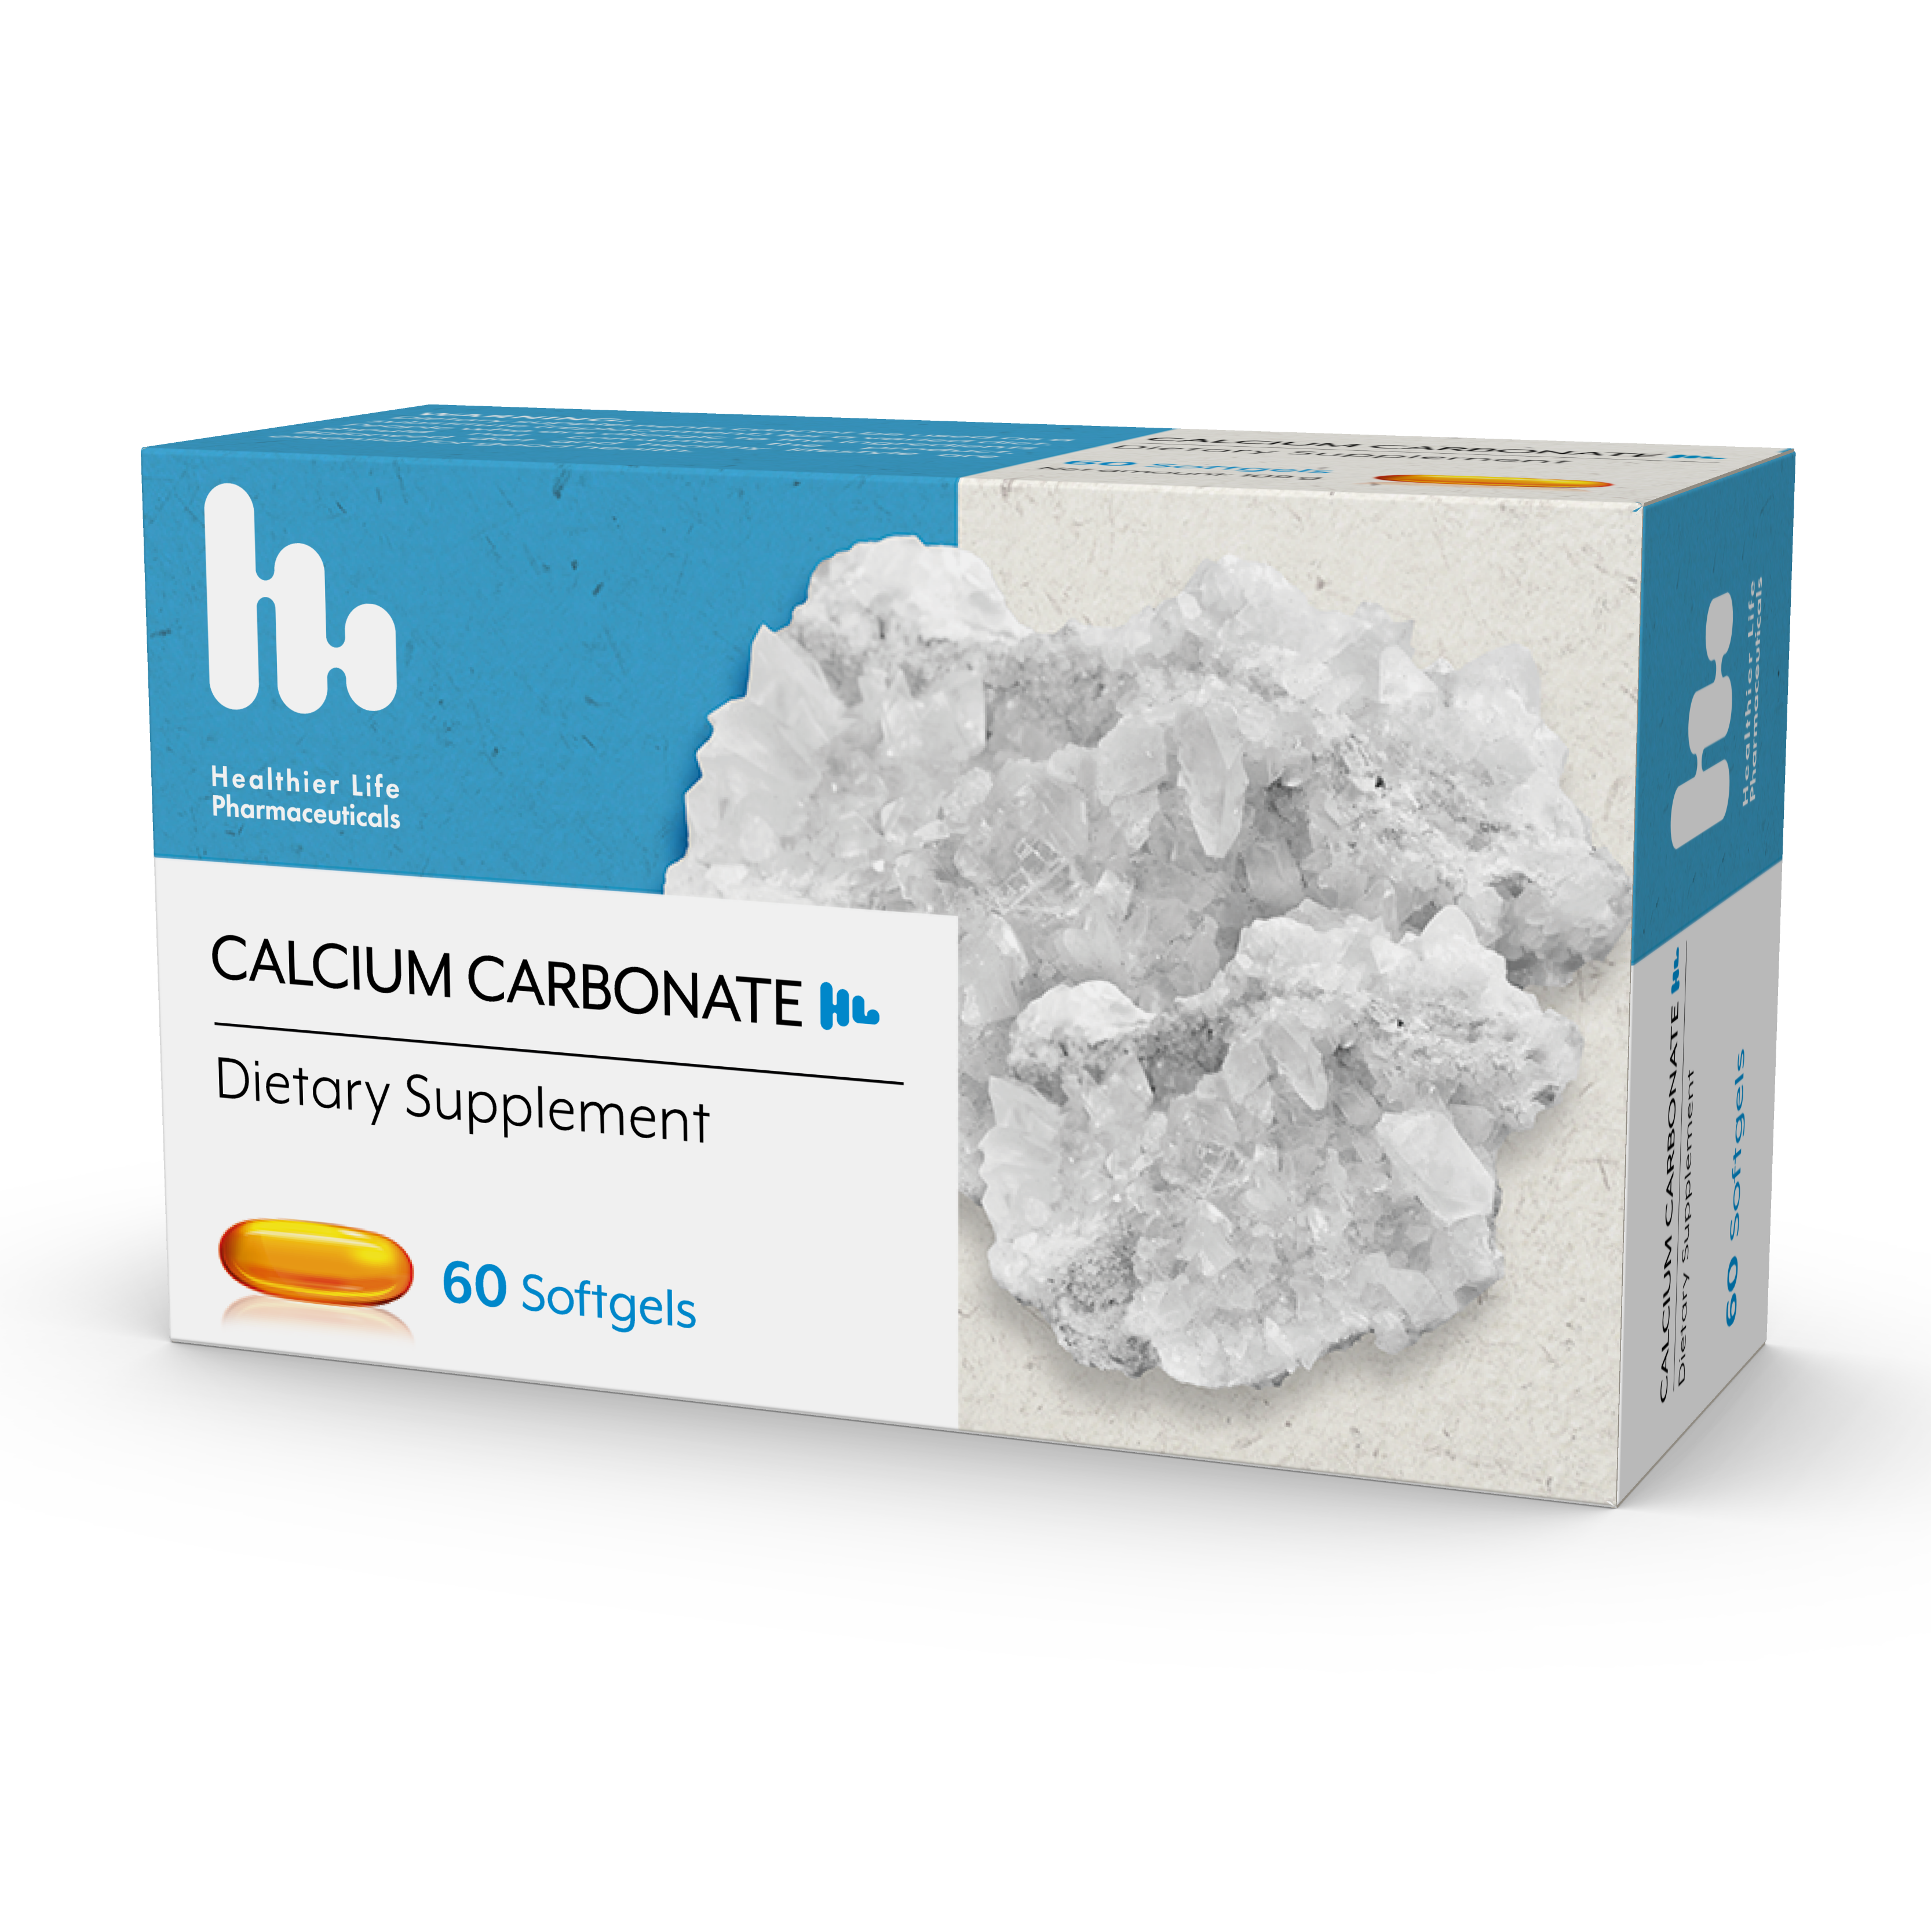 Calcium Carbonate HL 3D 01 20210728